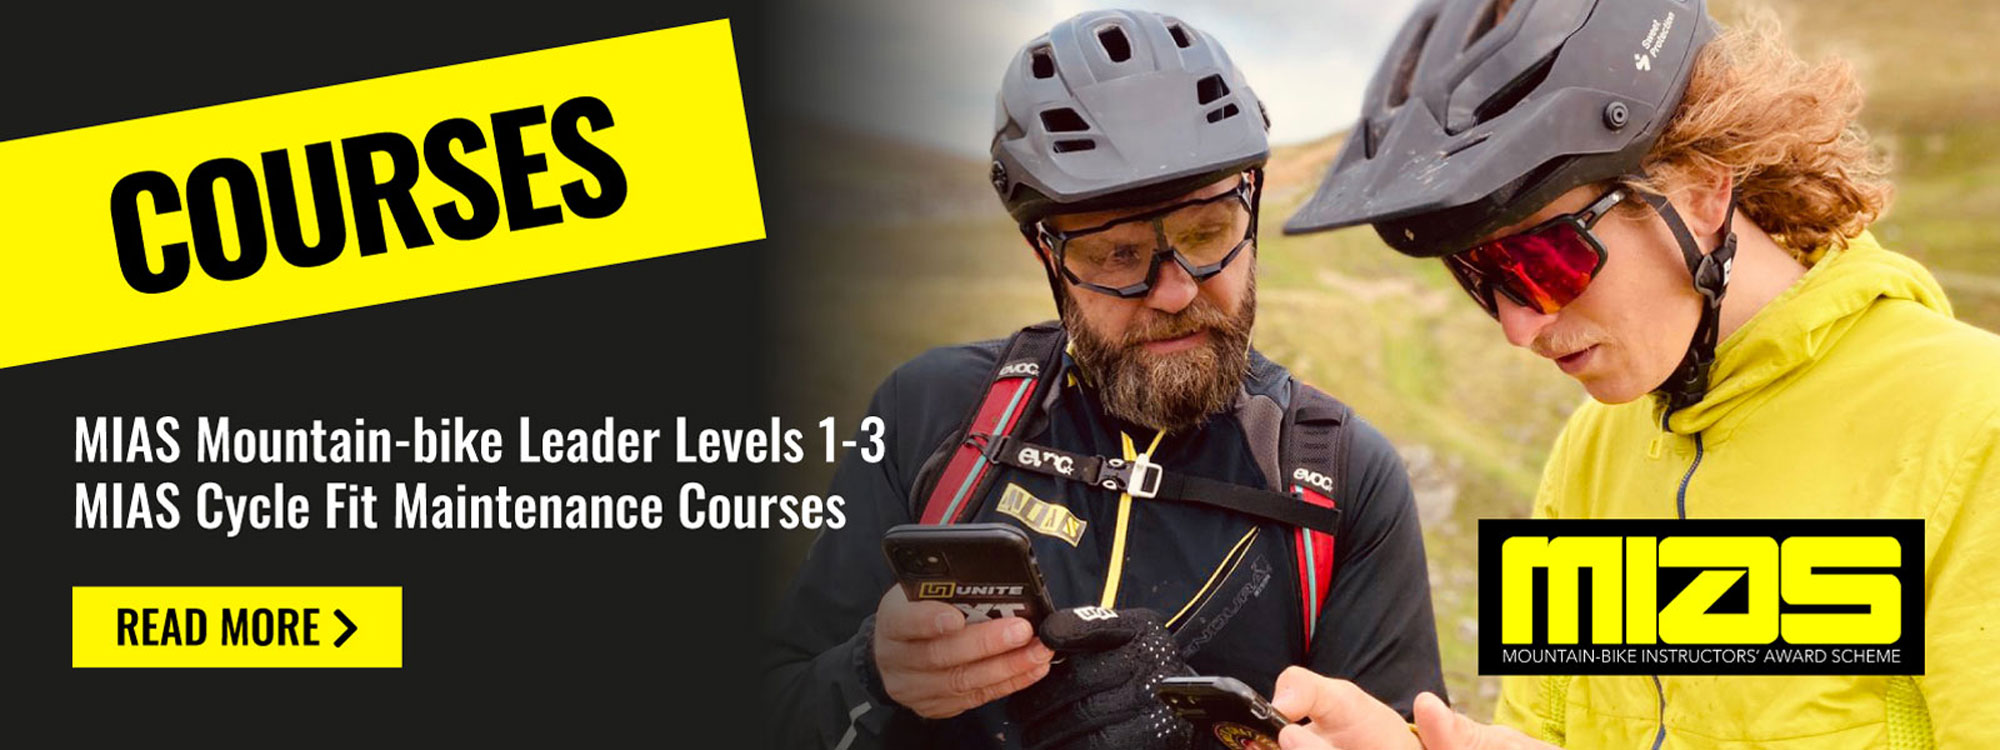 Courses - MIAS Mountain-bike leader Levels 1 - 3 & MIAS Cycle Fit Maintenance Courses - Read more >